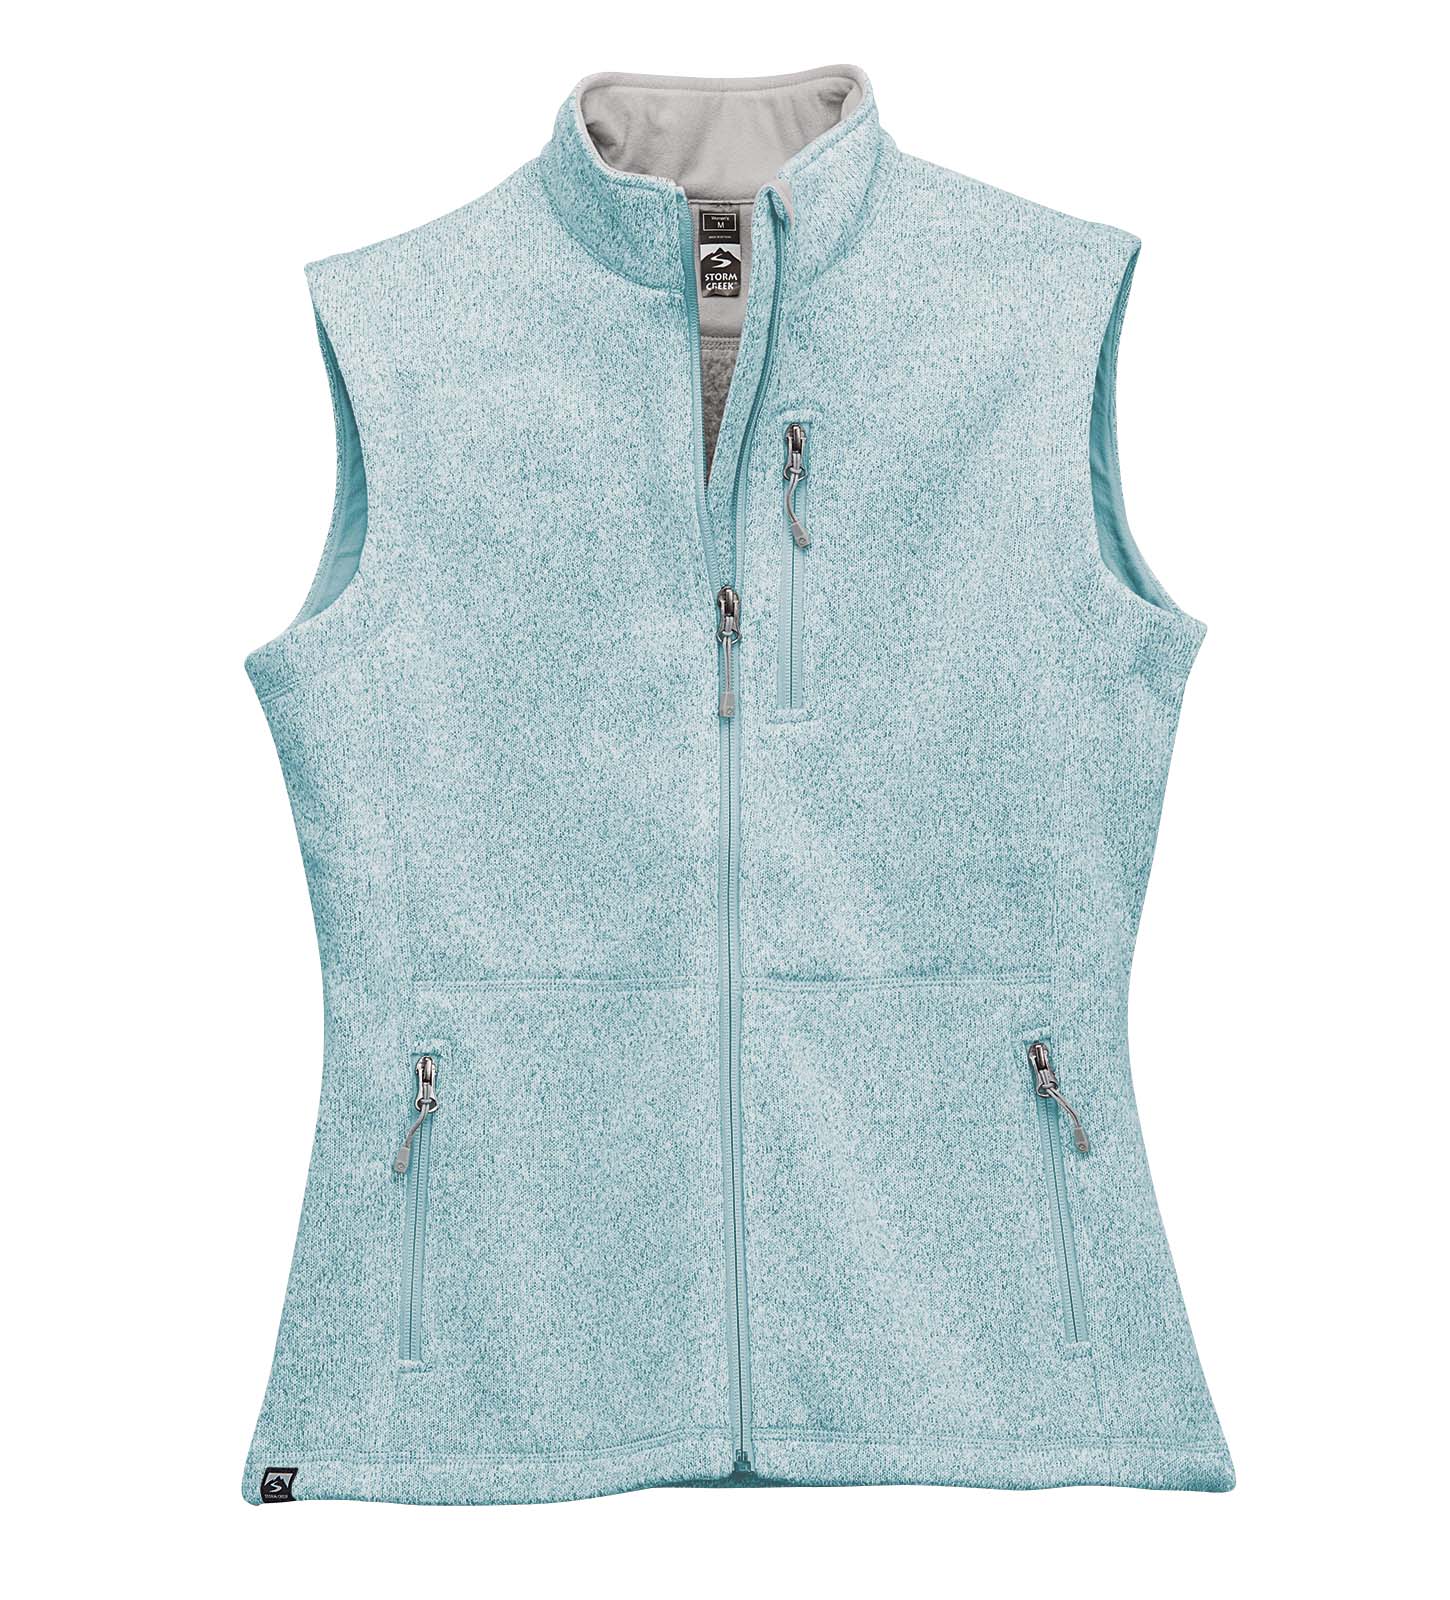 Women's Jackets, Vests & Fleece Jackets – LSKD US